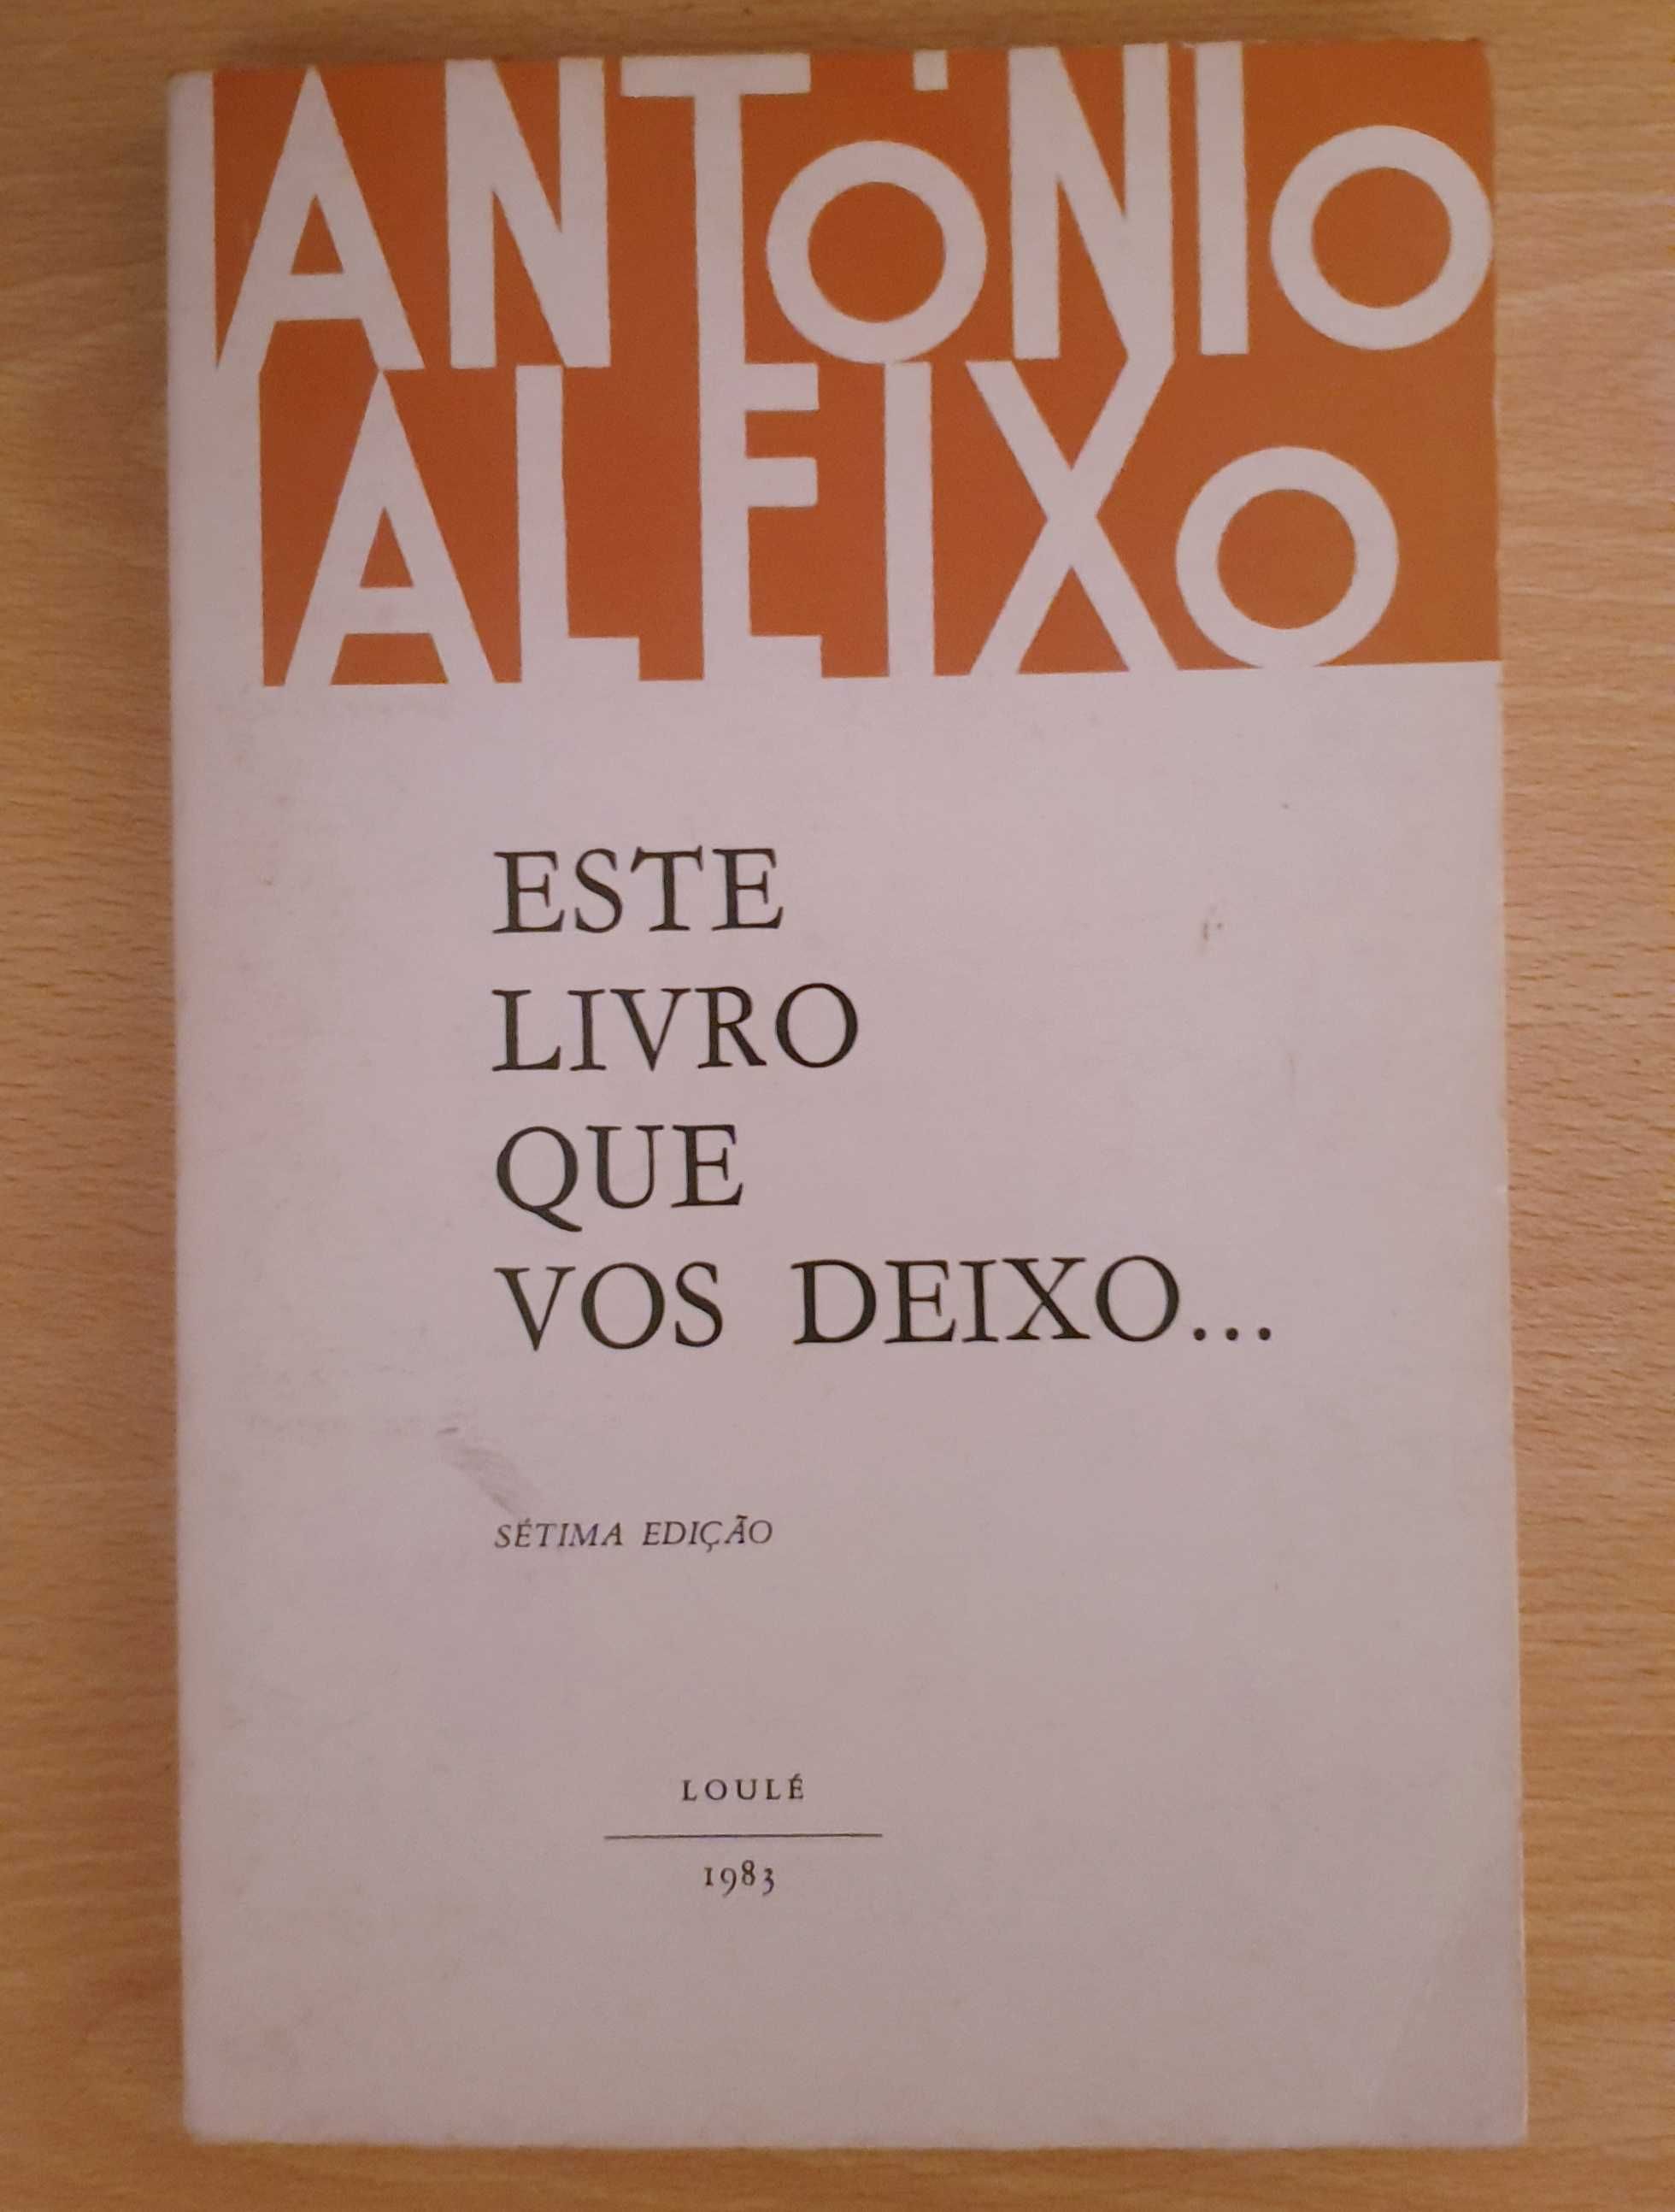 Livro de Antonio Aleixo